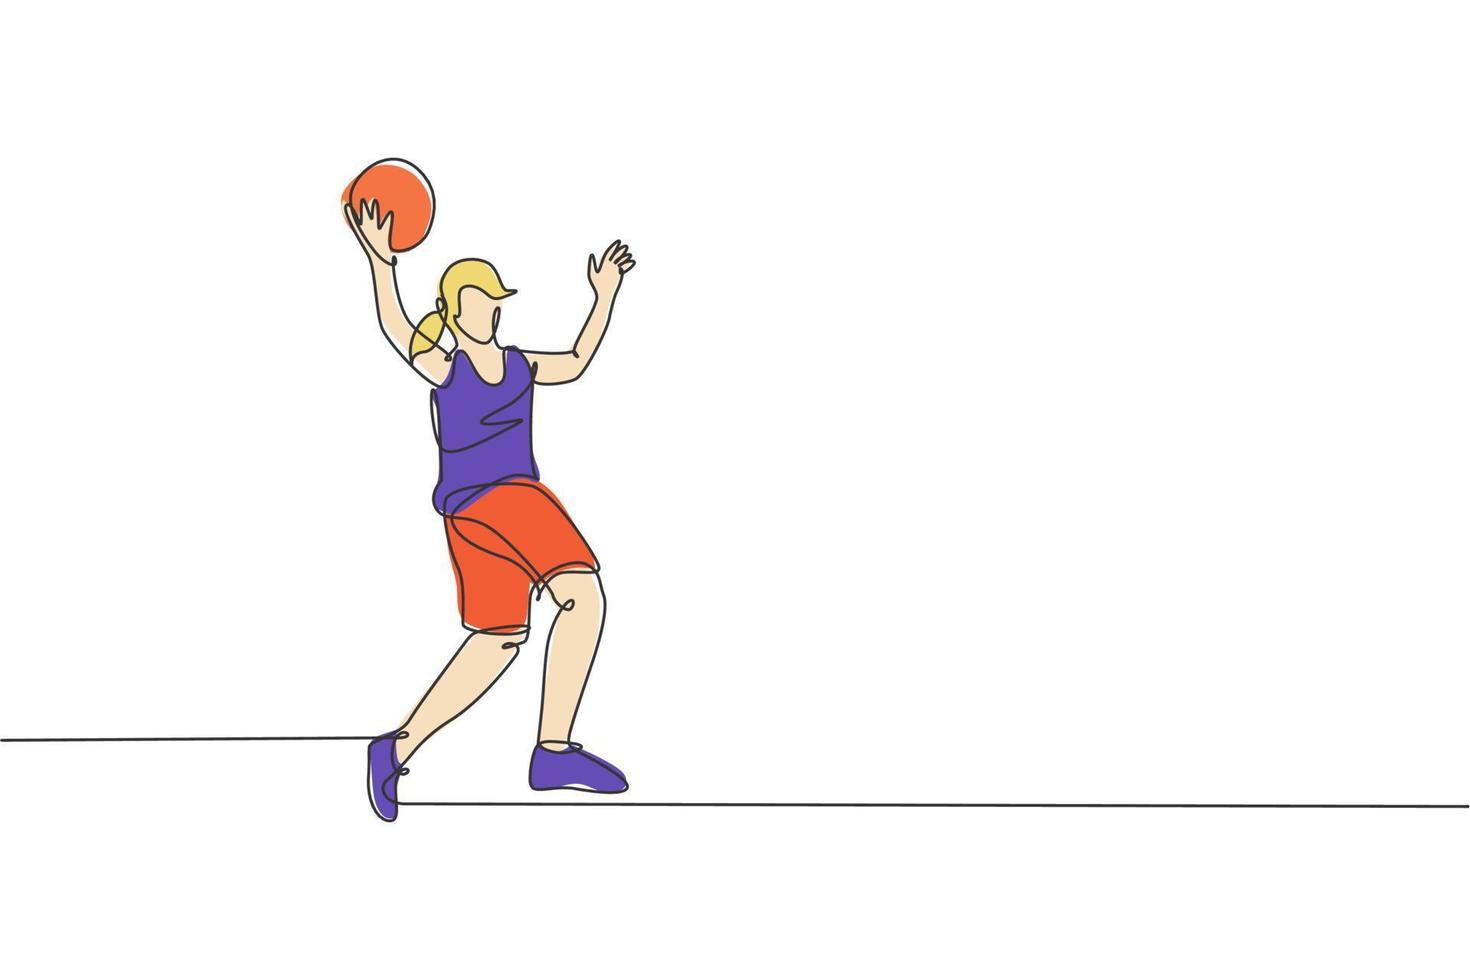 un disegno a linea continua giovane giocatore di basket donna prendere la palla. concetto di sport di lavoro di squadra competitivo. illustrazione grafica vettoriale dinamica con disegno a linea singola per i media di promozione del torneo